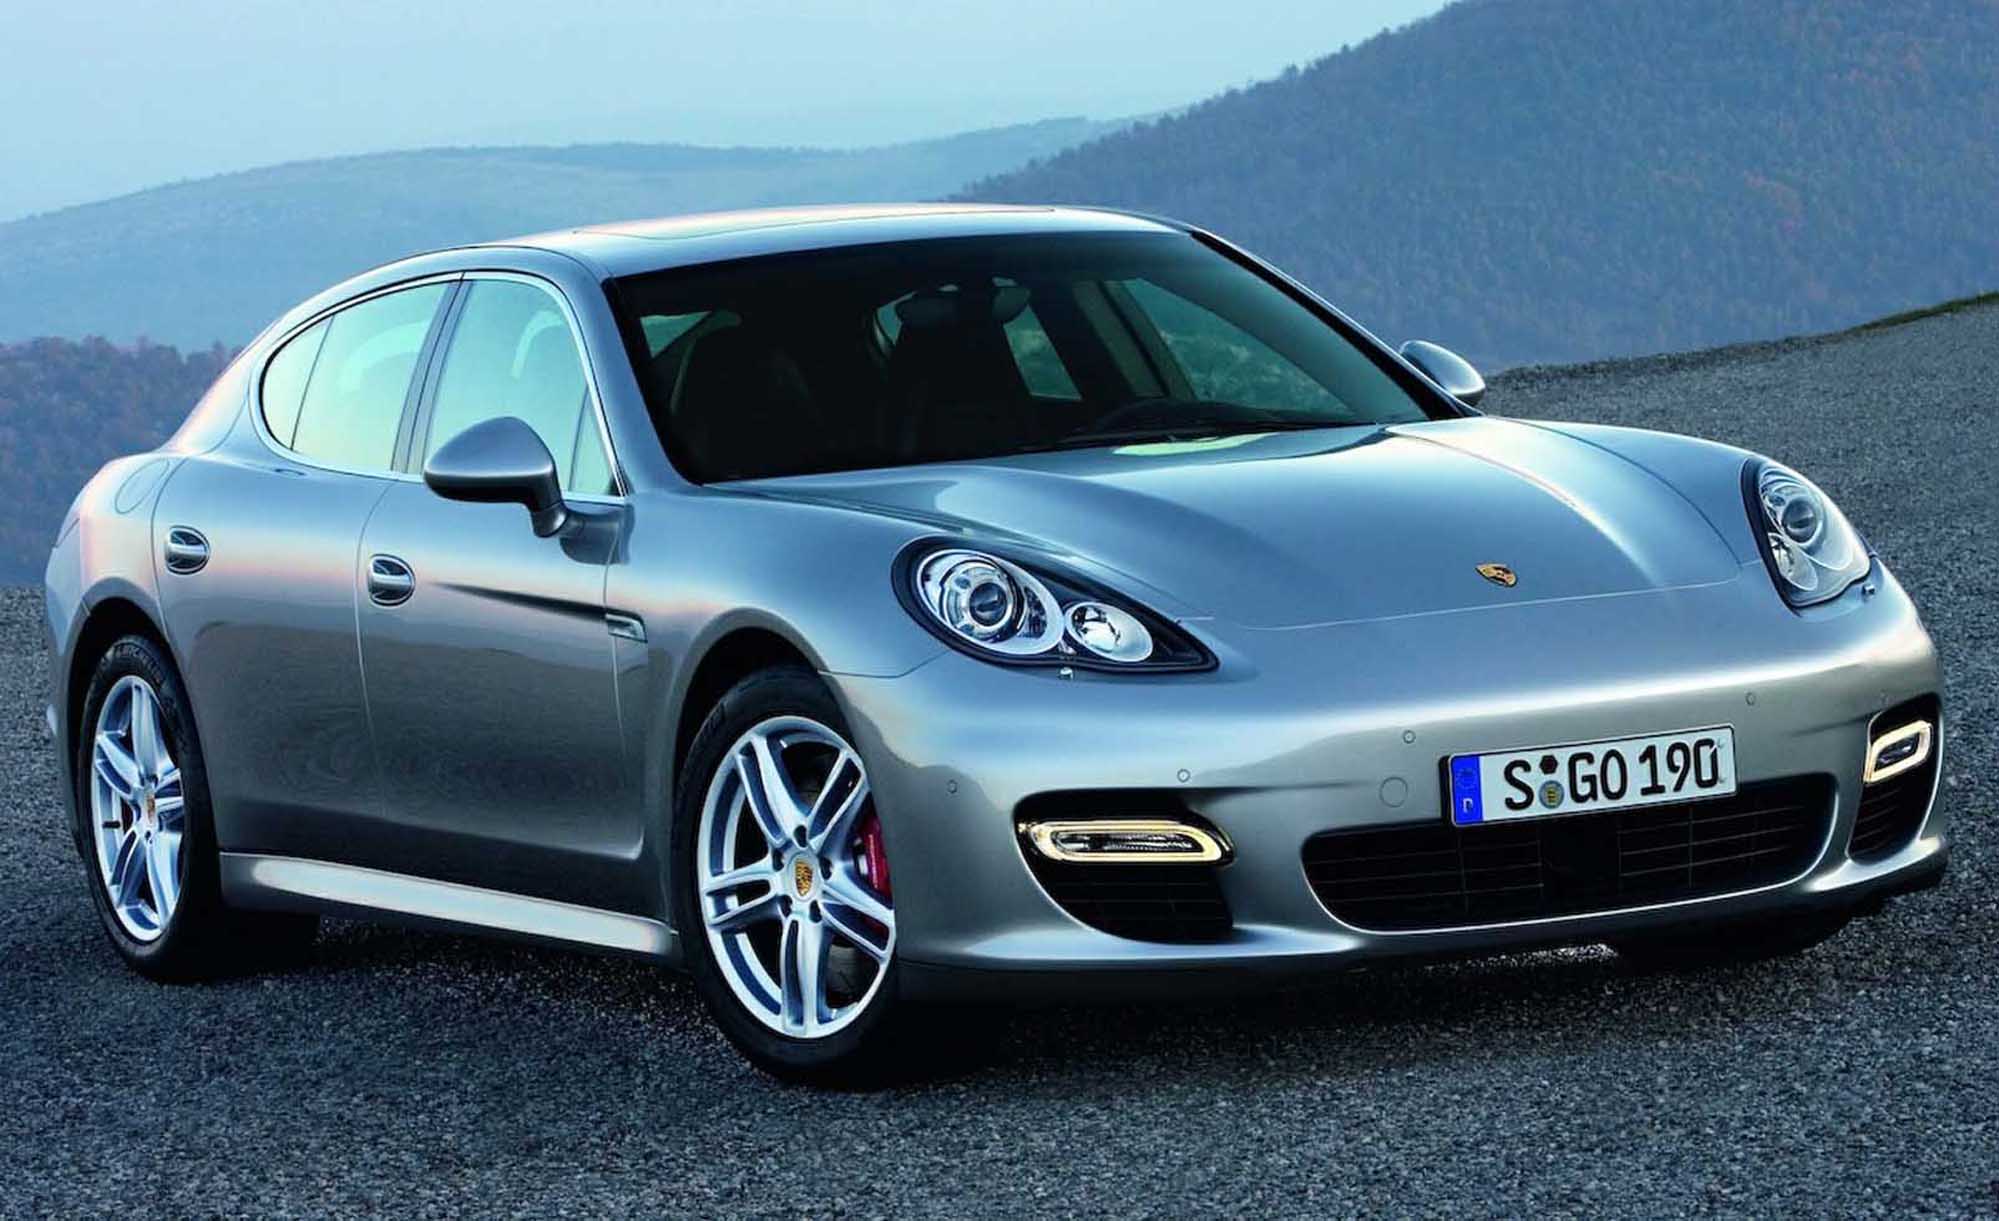 Image principale de l'actu: Porsche panamera la video et les photos 